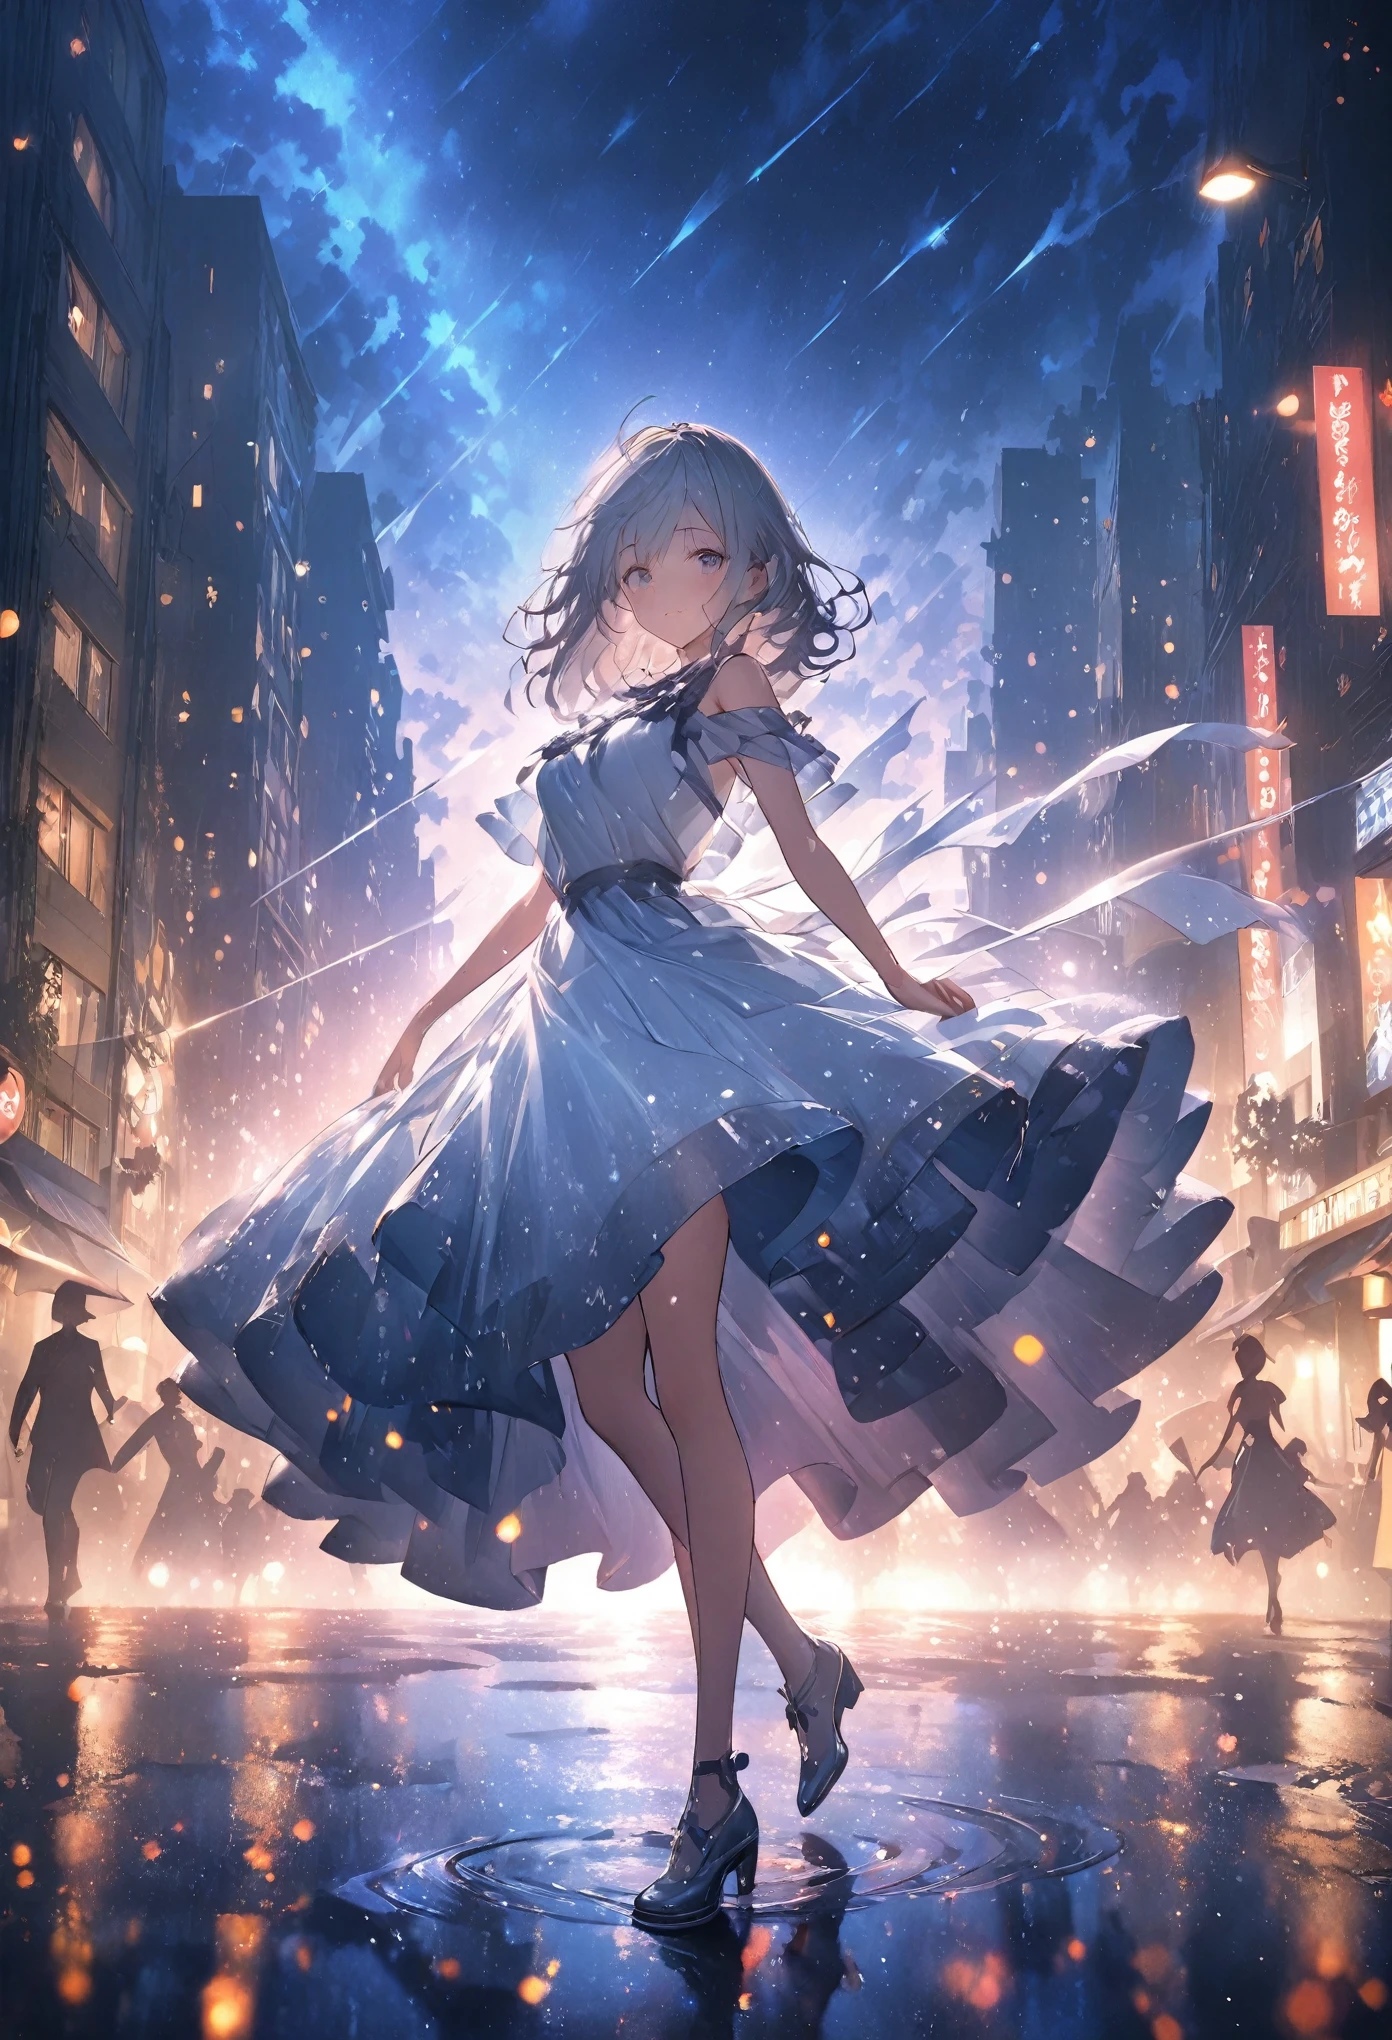 걸작, 최고의 품질, 매우 상세한 CG Unity 8k 벽지, 비오는 밤의 도시. 우산 없이 춤추는 소녀의 실루엣 일러스트. 가로등과 달빛이 스포트라이트처럼 비춰지는 것 같아요. 도시 풍경이 사실적으로 정밀하게 묘사되어 있습니다., 고화질 디테일. 초점은 소녀에게 있고 배경은 흐릿합니다.. 옥탄 렌더링 스타일. 전체적으로 빛의 입자.